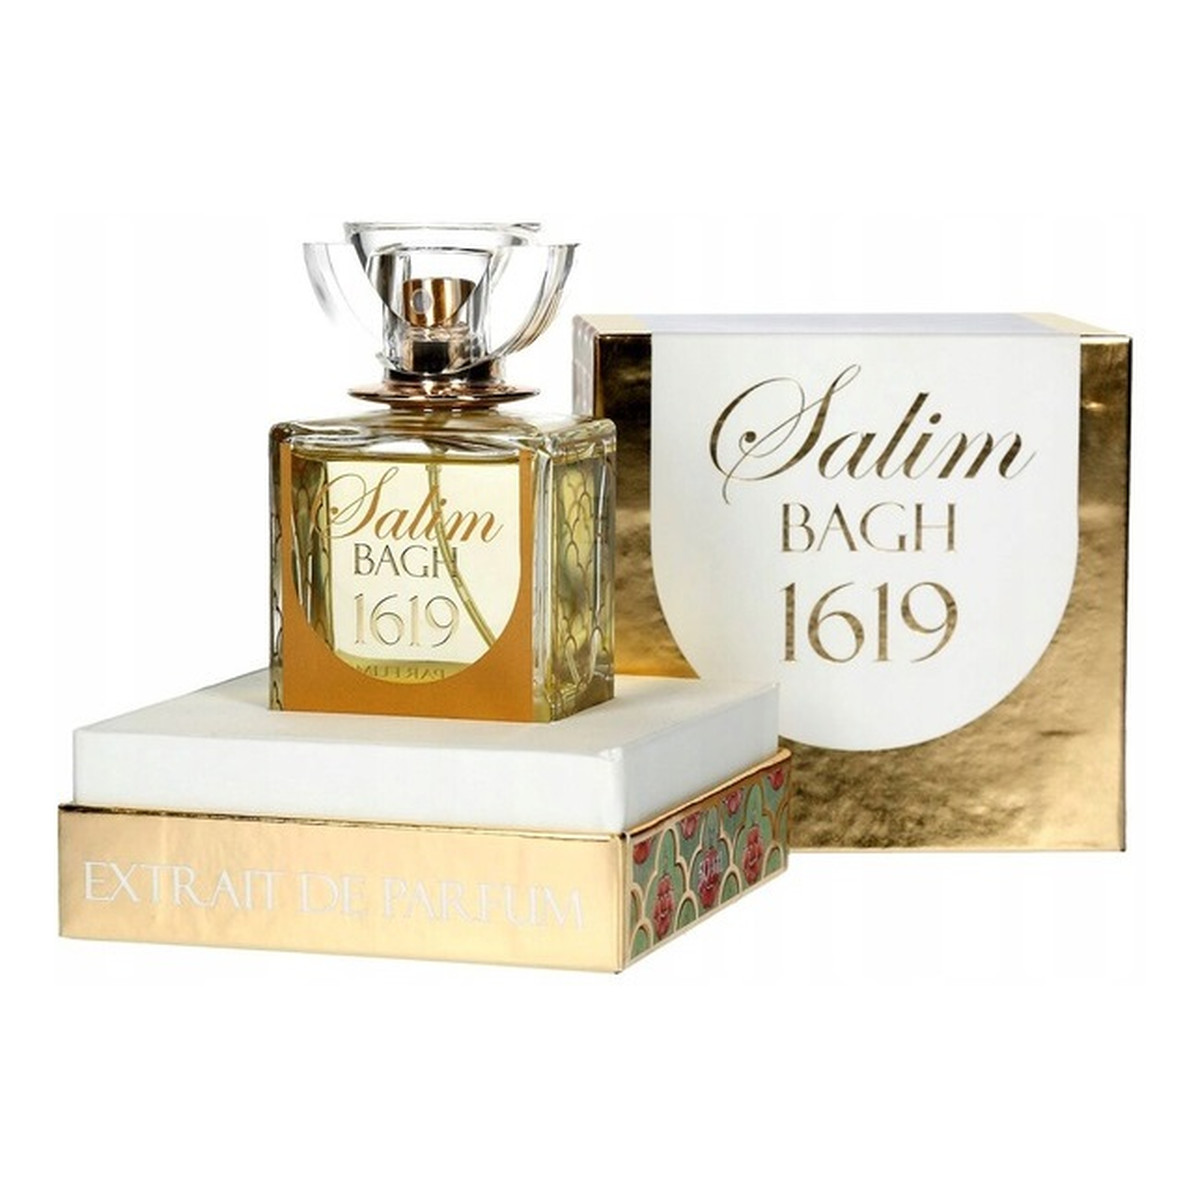 Tabacora Salim Bagh 1619 Extrait De Parfum 50ml